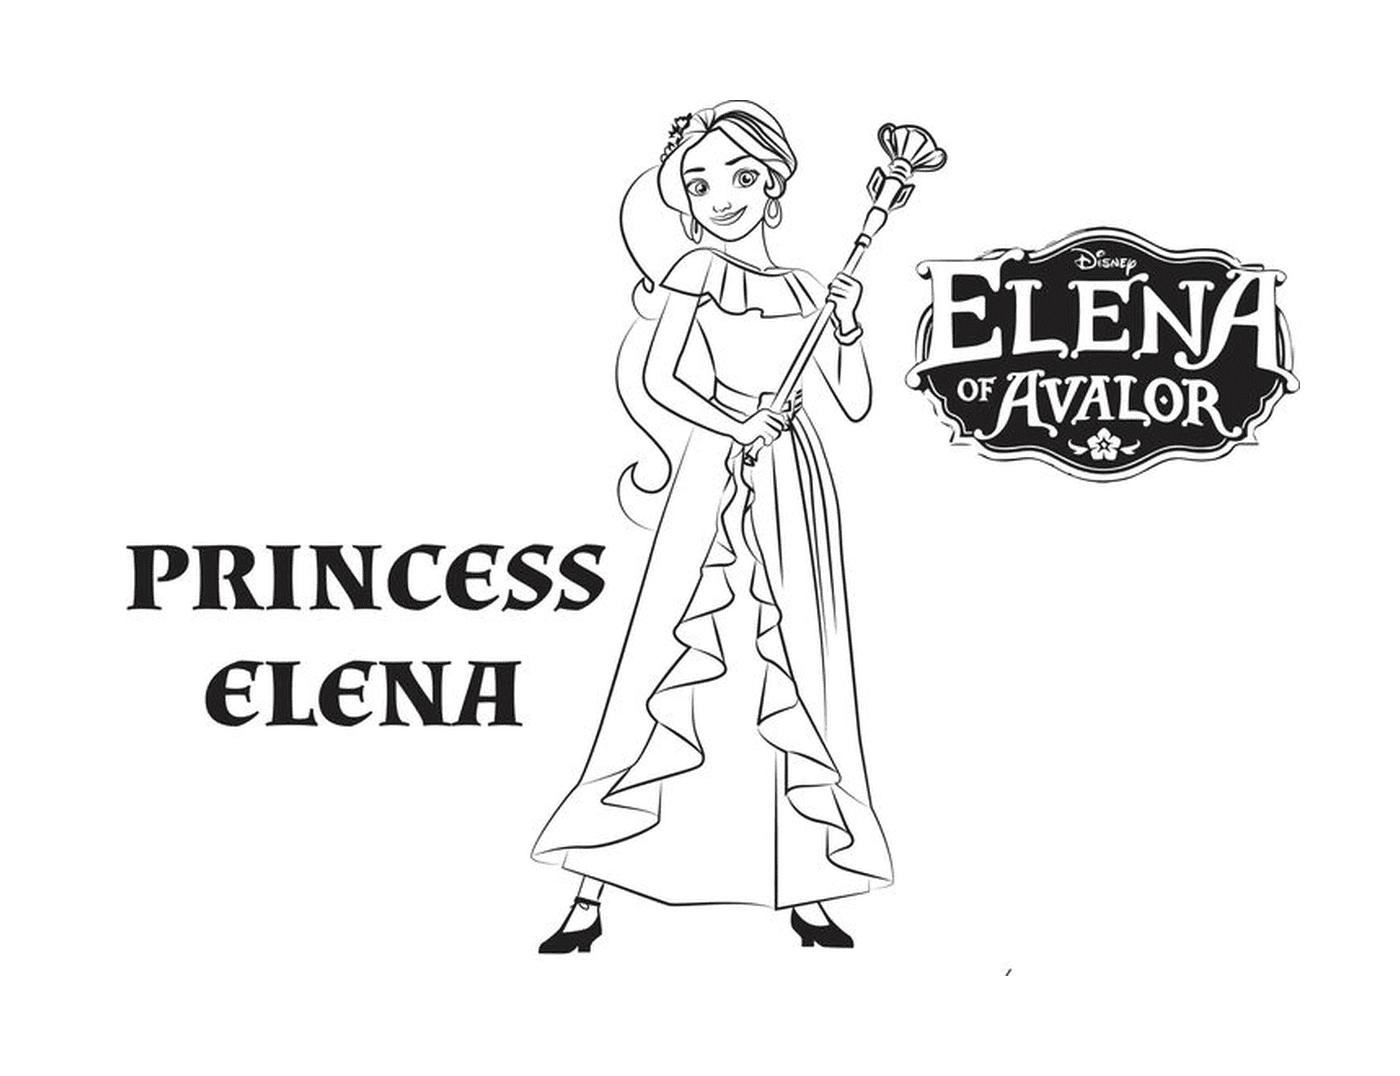  Principessa Elena di Disney Avalor 